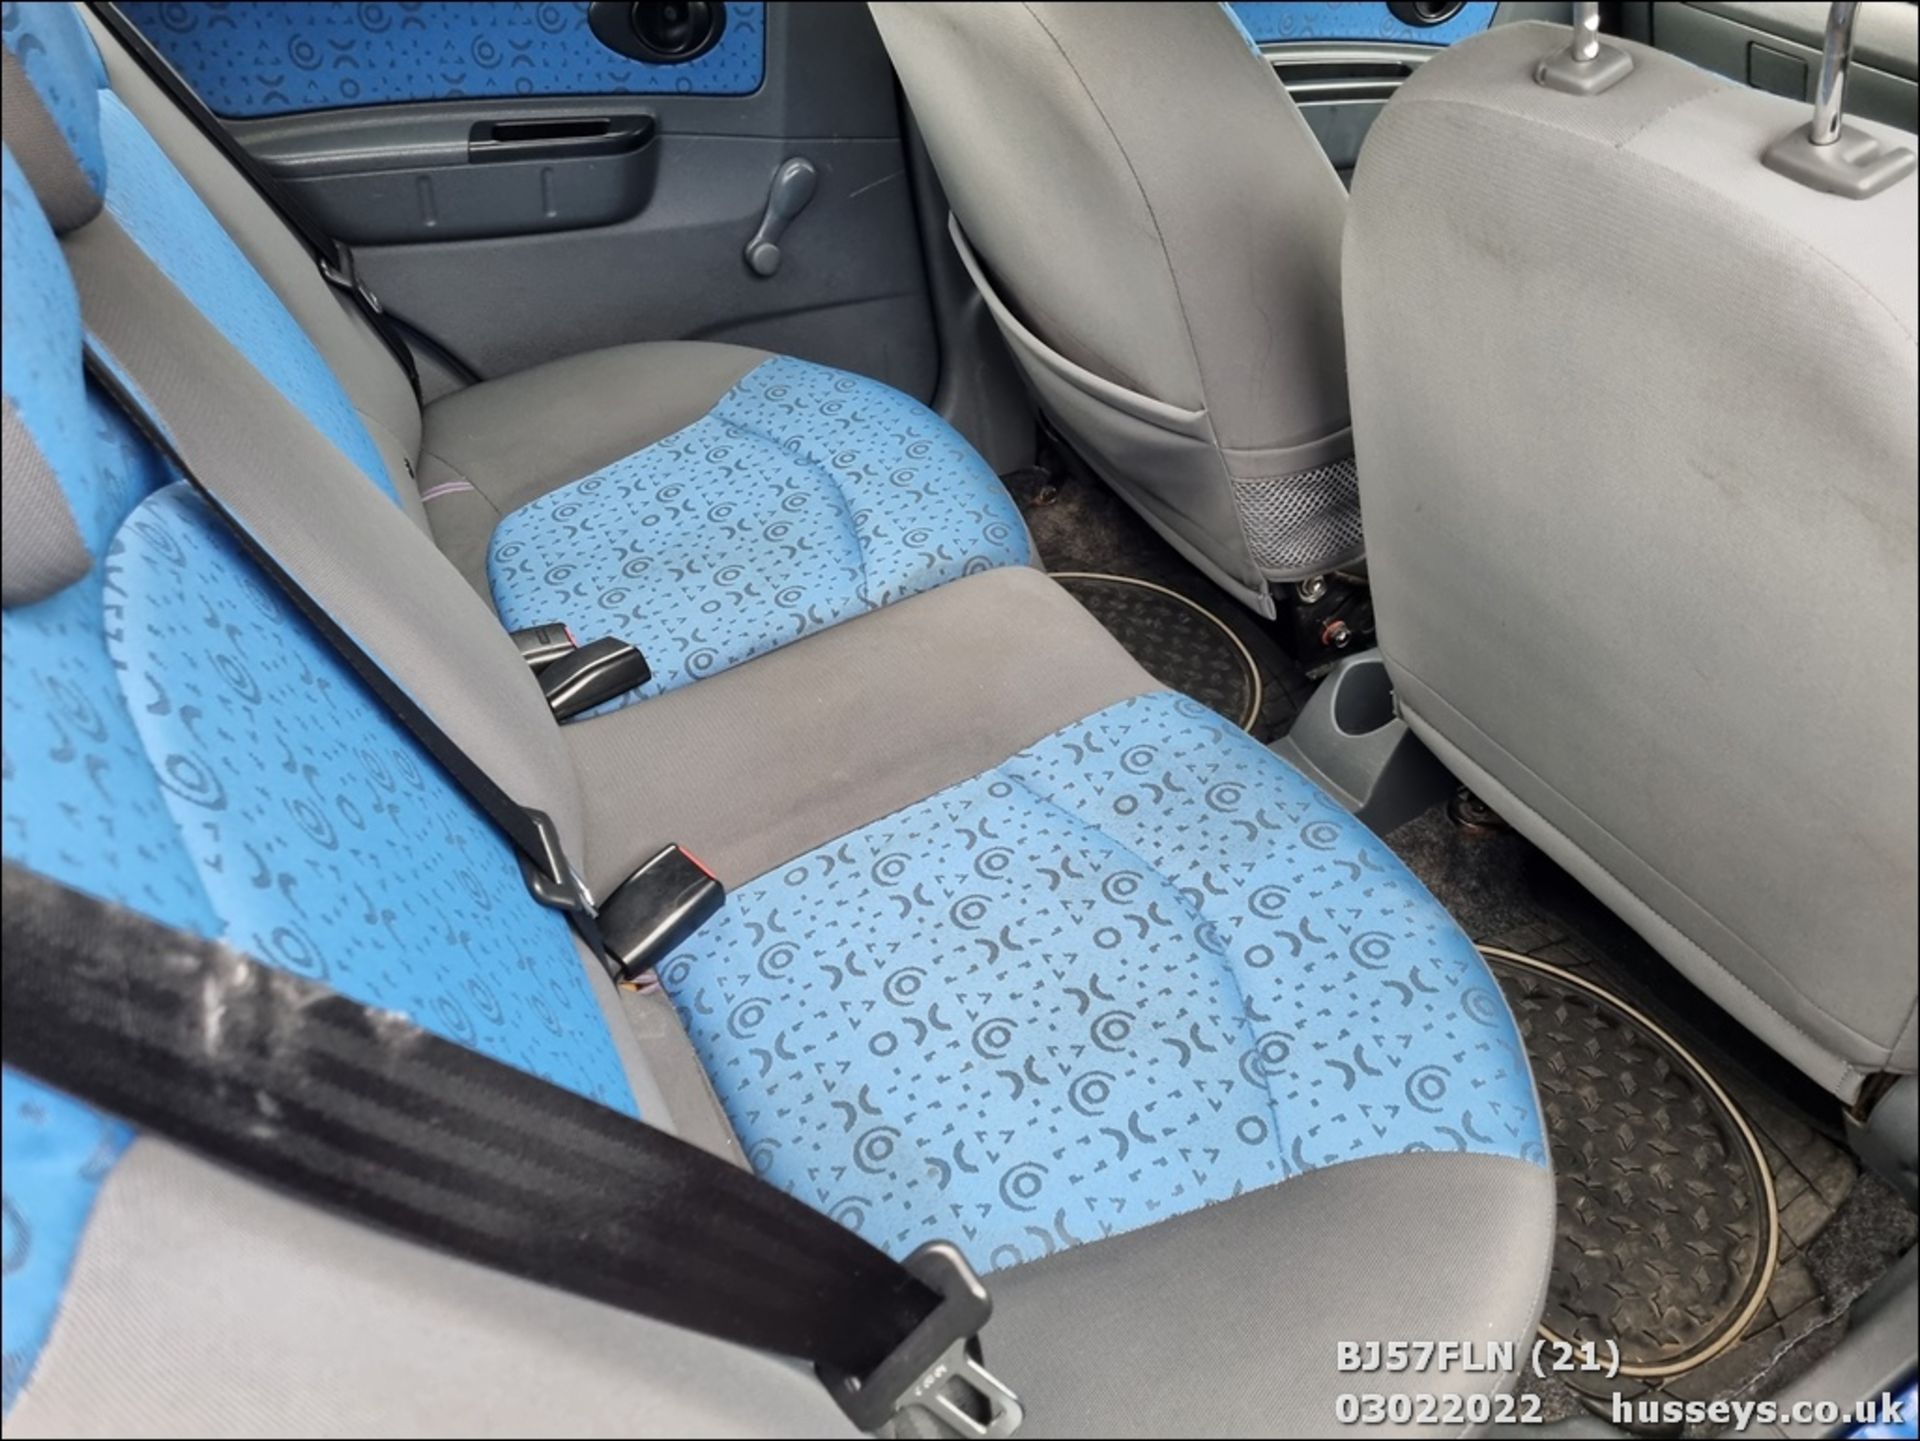 07/57 CHEVROLET MATIZ SE - 995cc 5dr Hatchback (Blue) - Image 21 of 27